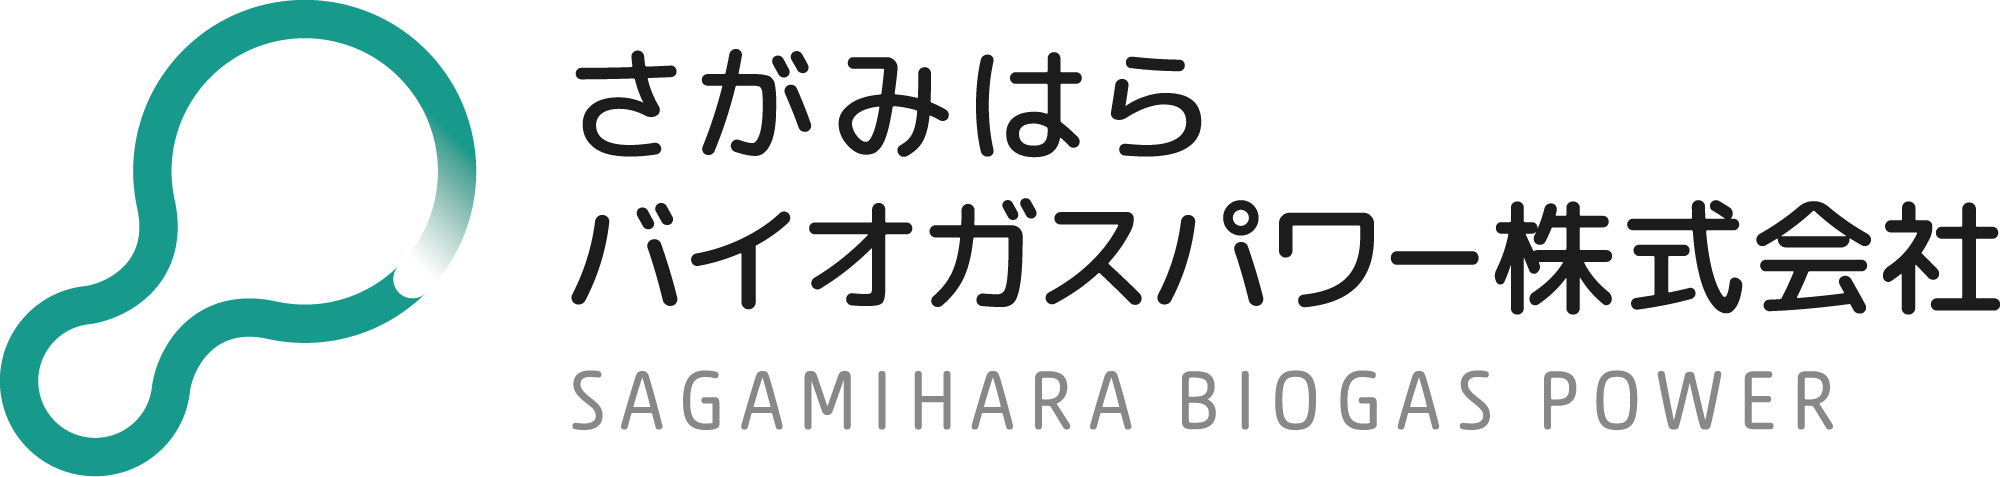 Sagamihara Biogas Power Co., Ltd.